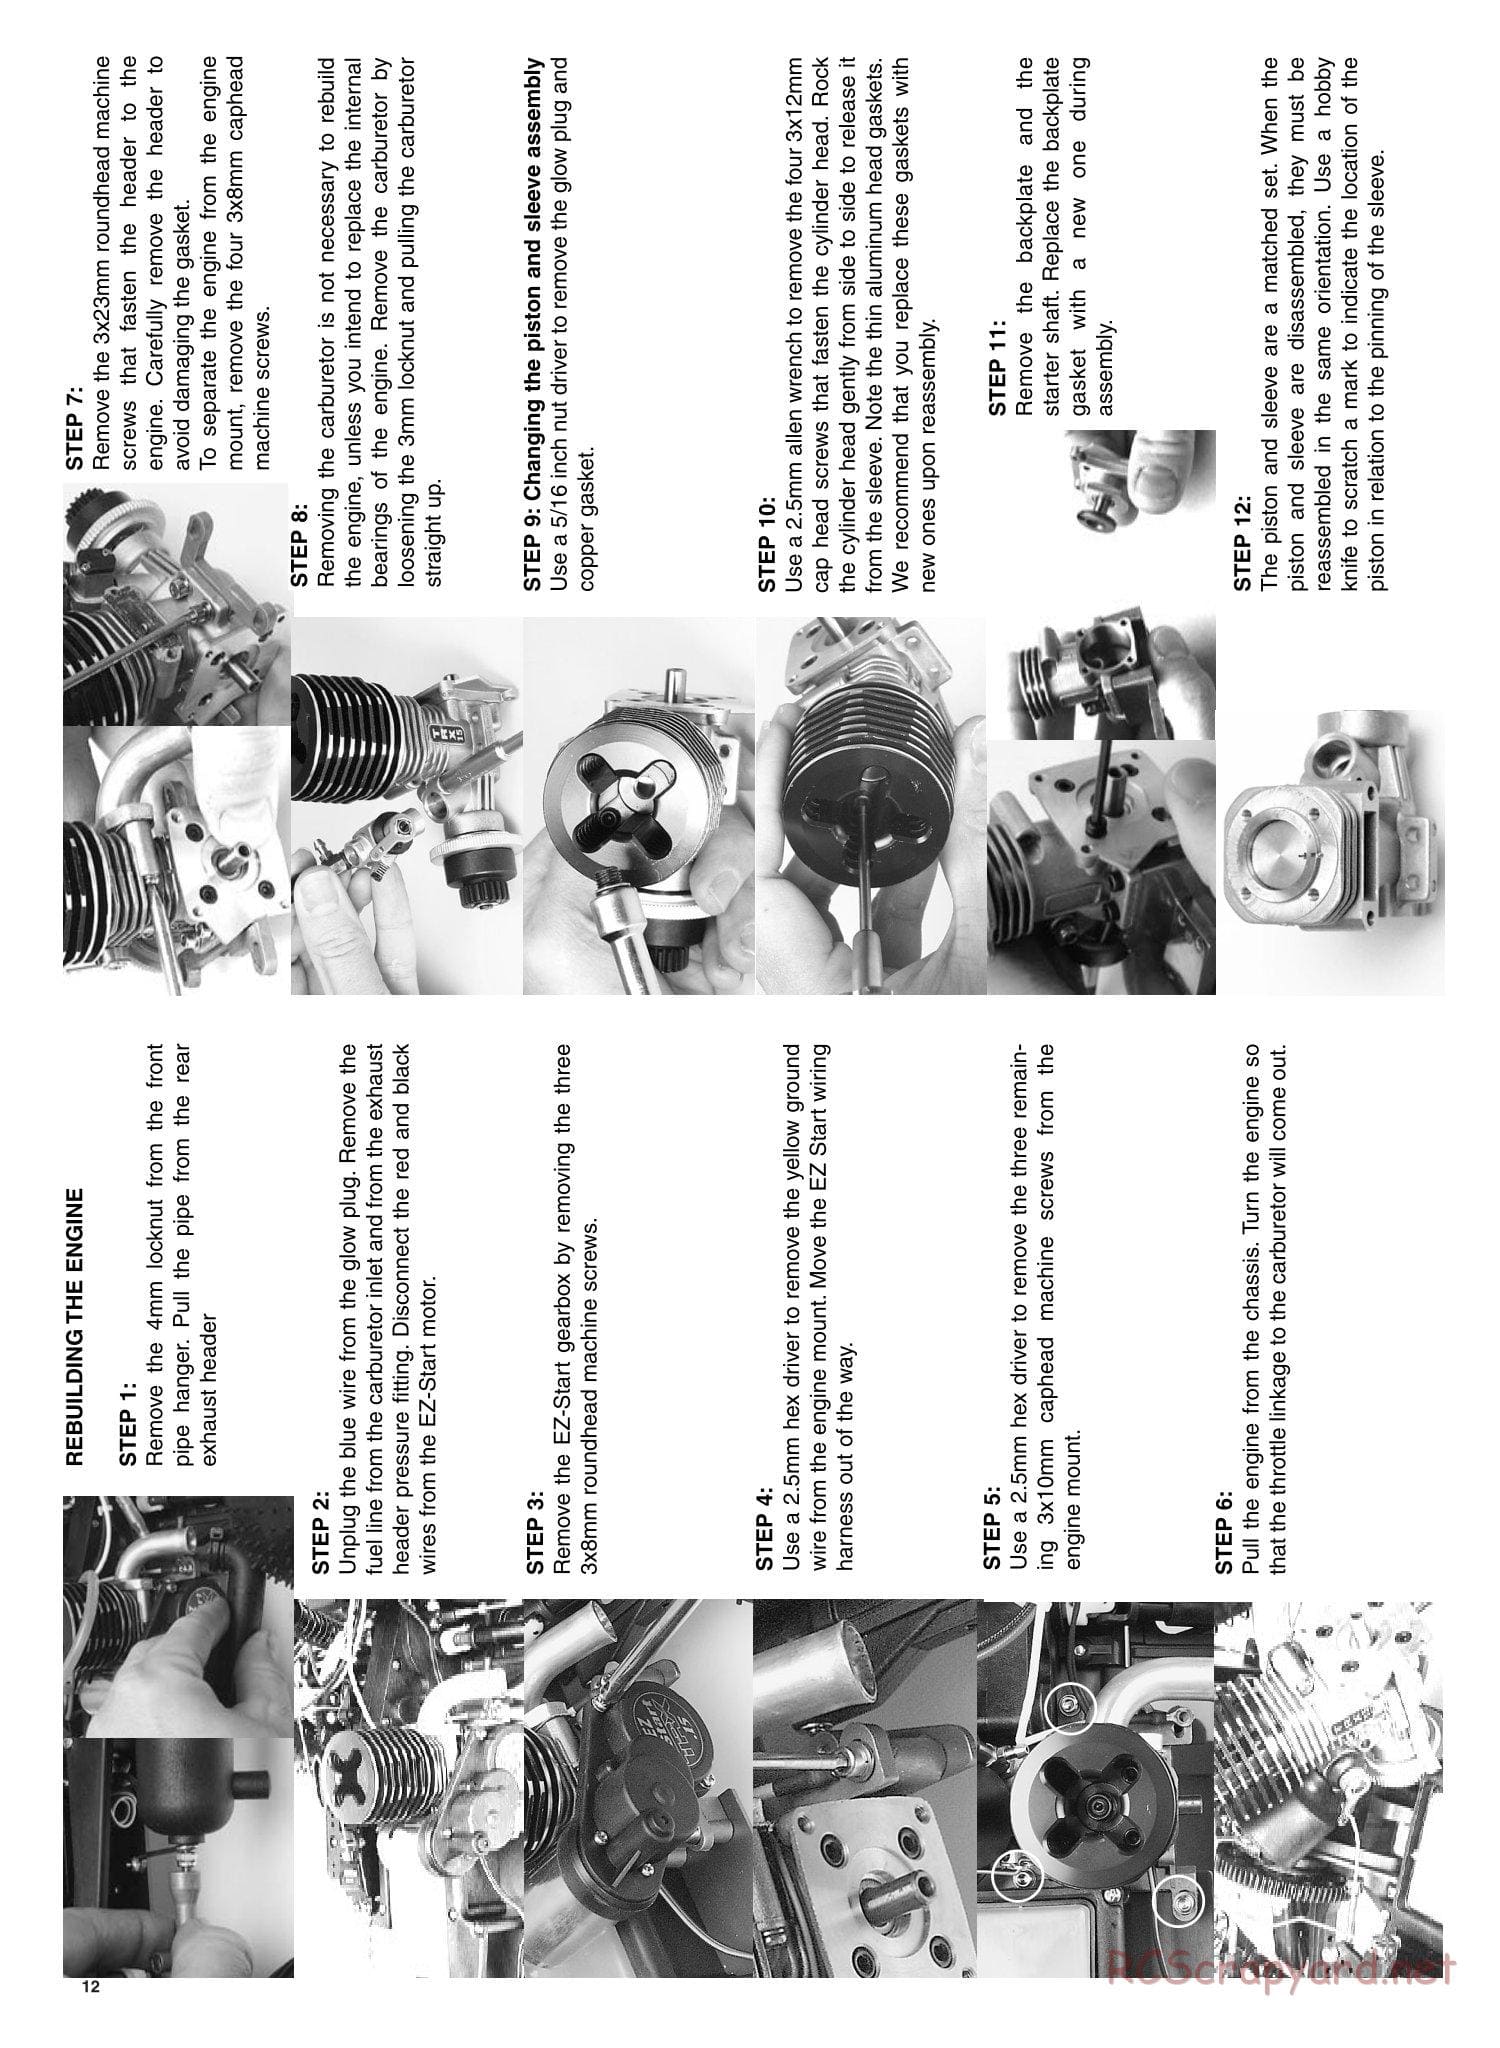 Traxxas - Nitro Rustler - Manual - Page 12